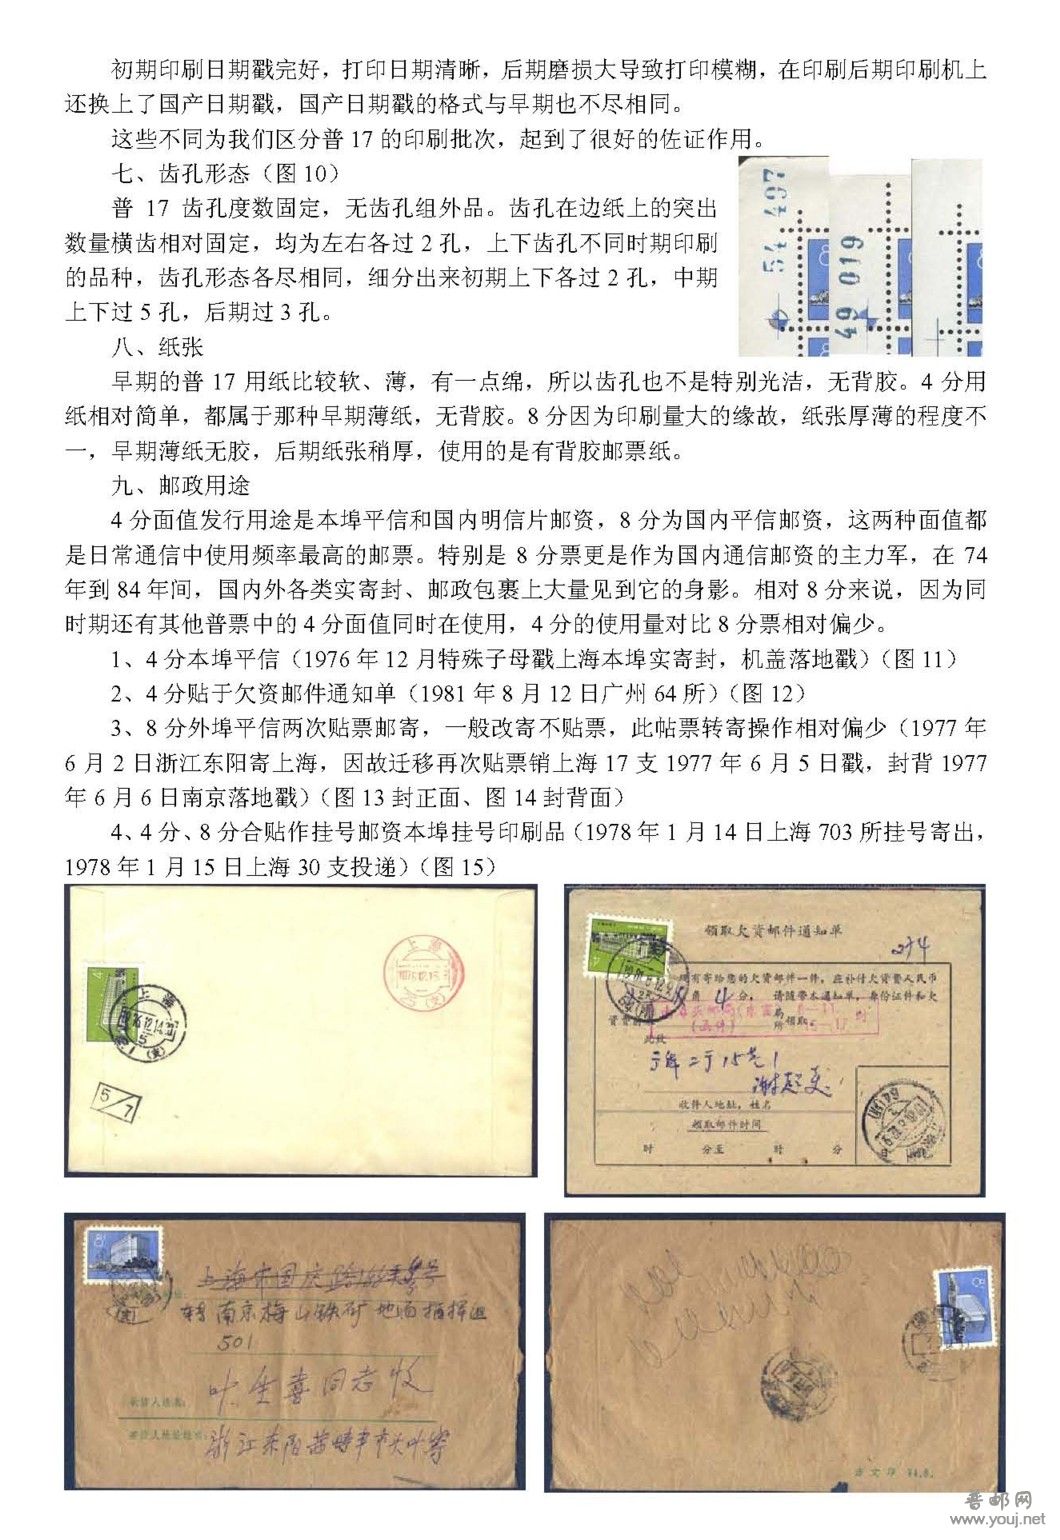 普17 北京建筑图普通邮票综述V0.2_页面_3.jpg